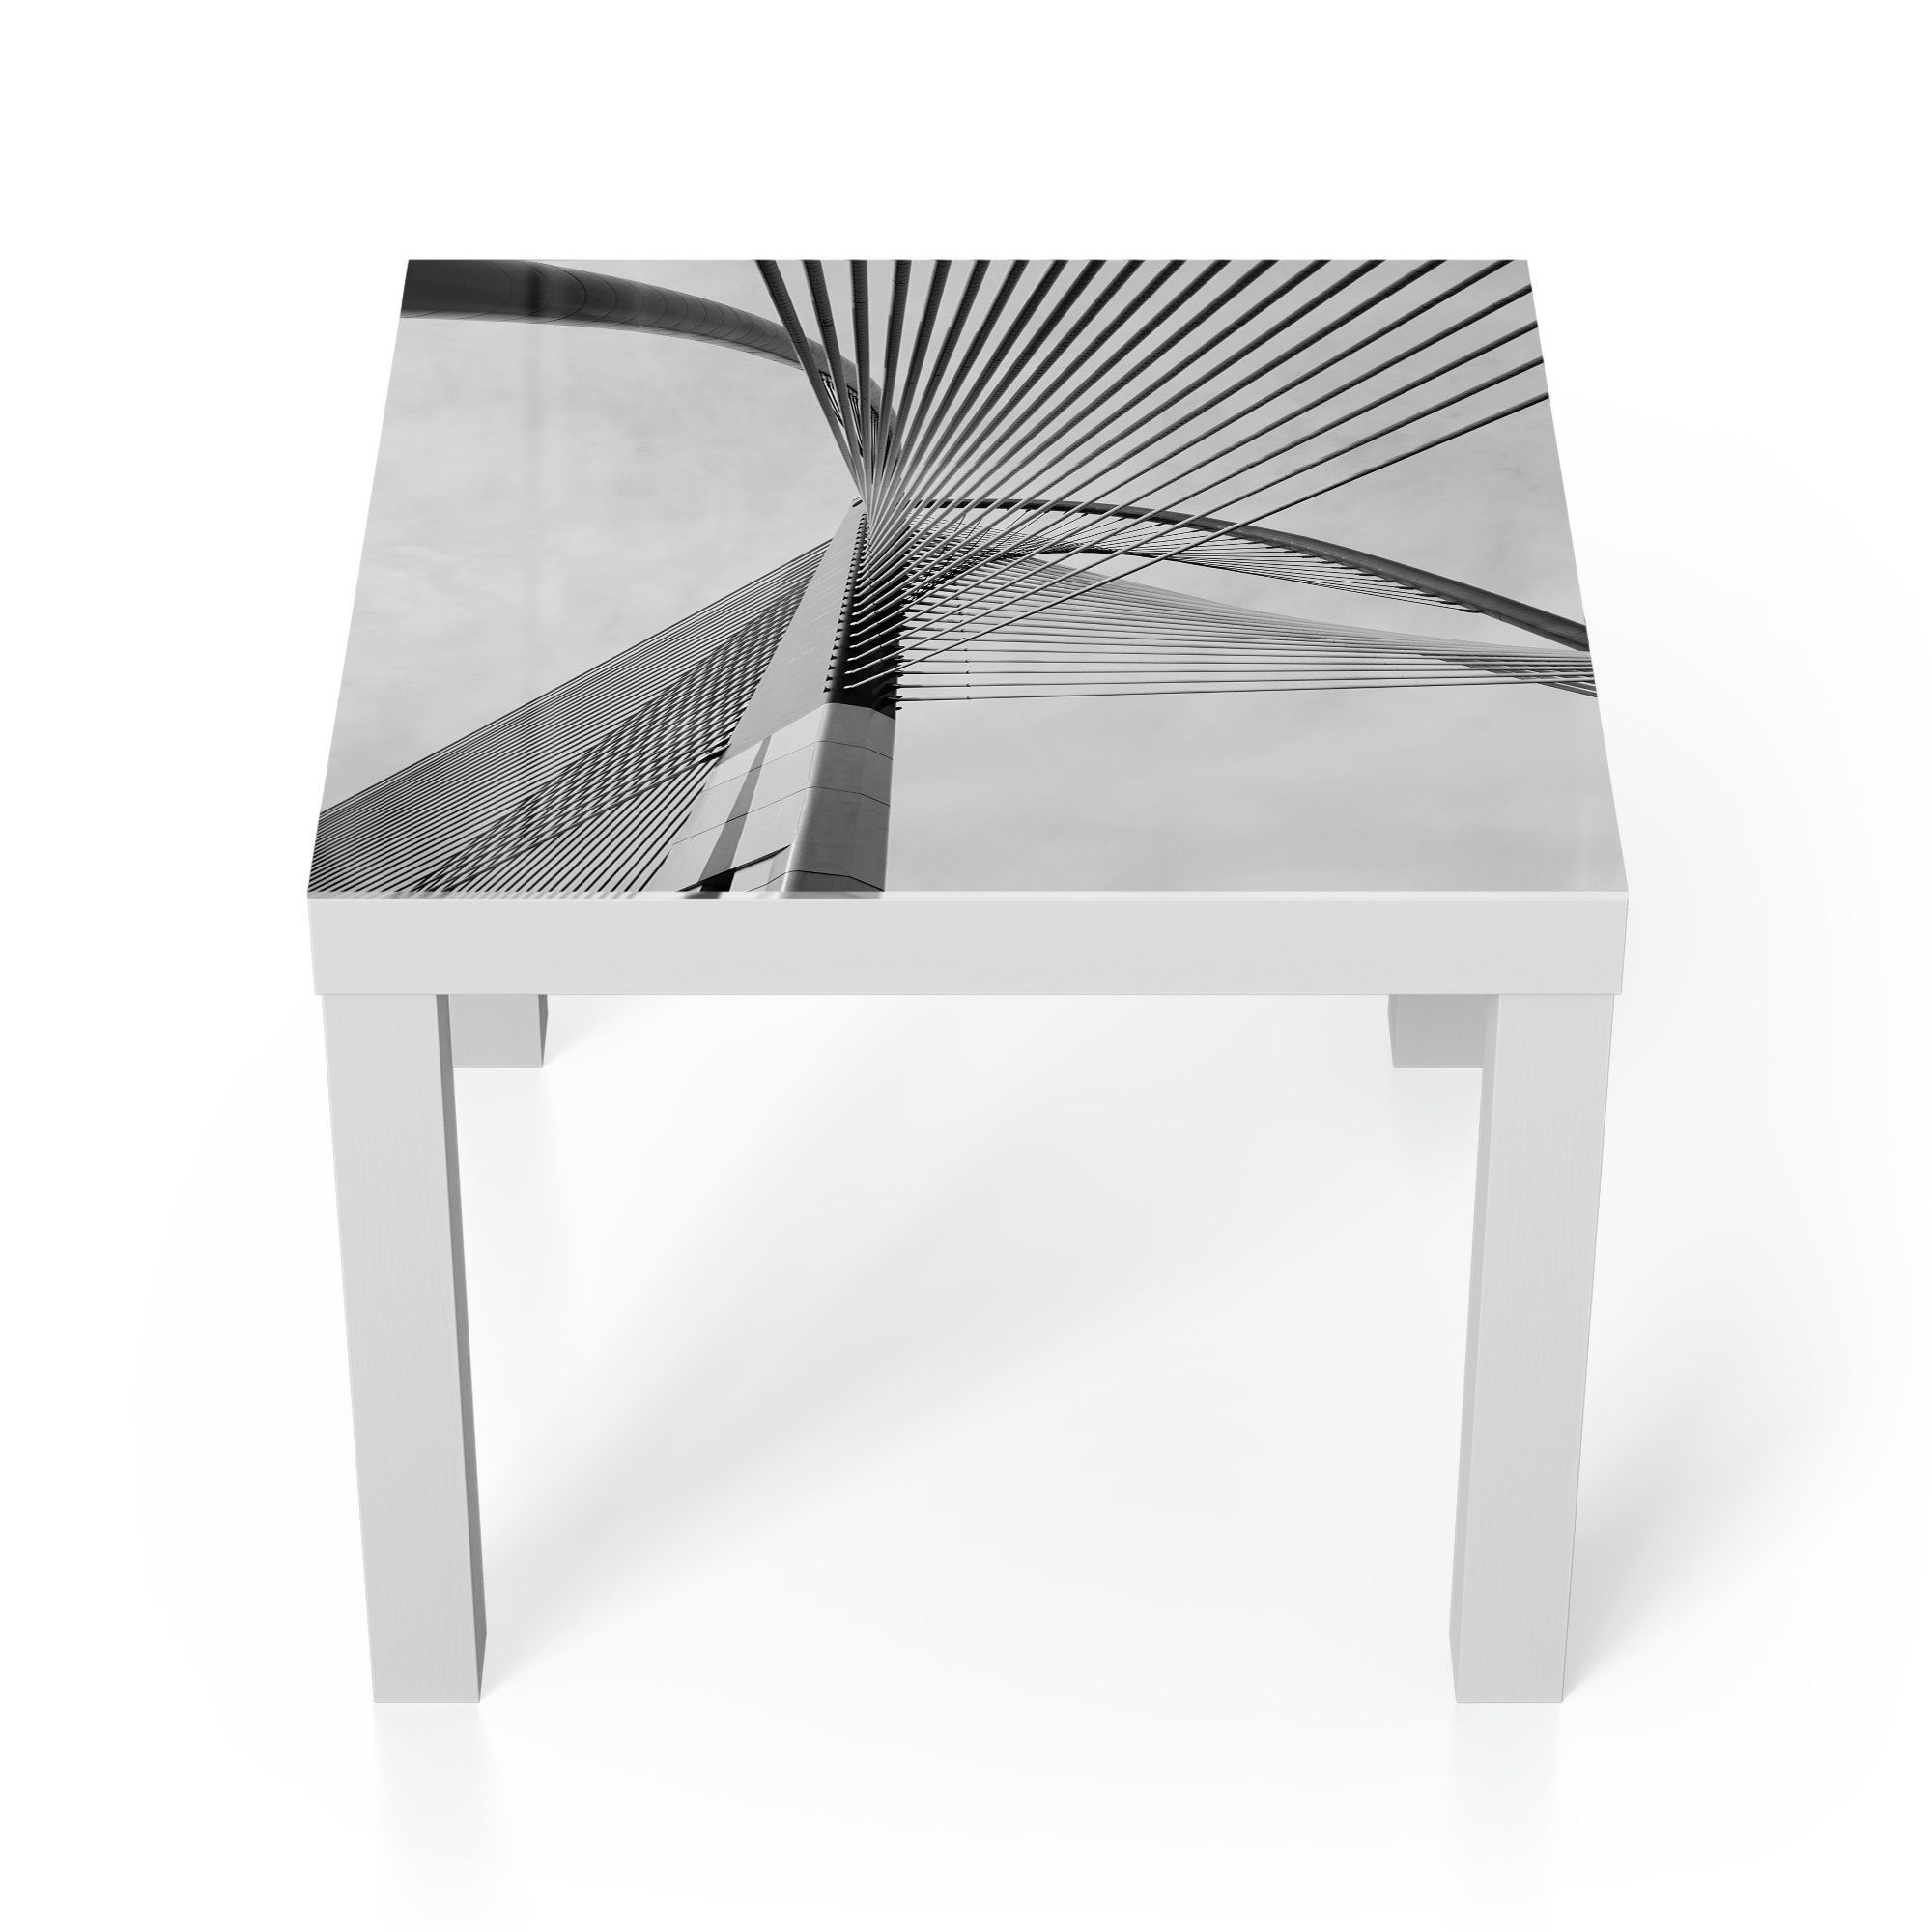 modern Glastisch Glas Couchtisch Beistelltisch DEQORI im Weiß Detail', 'Brückenseile